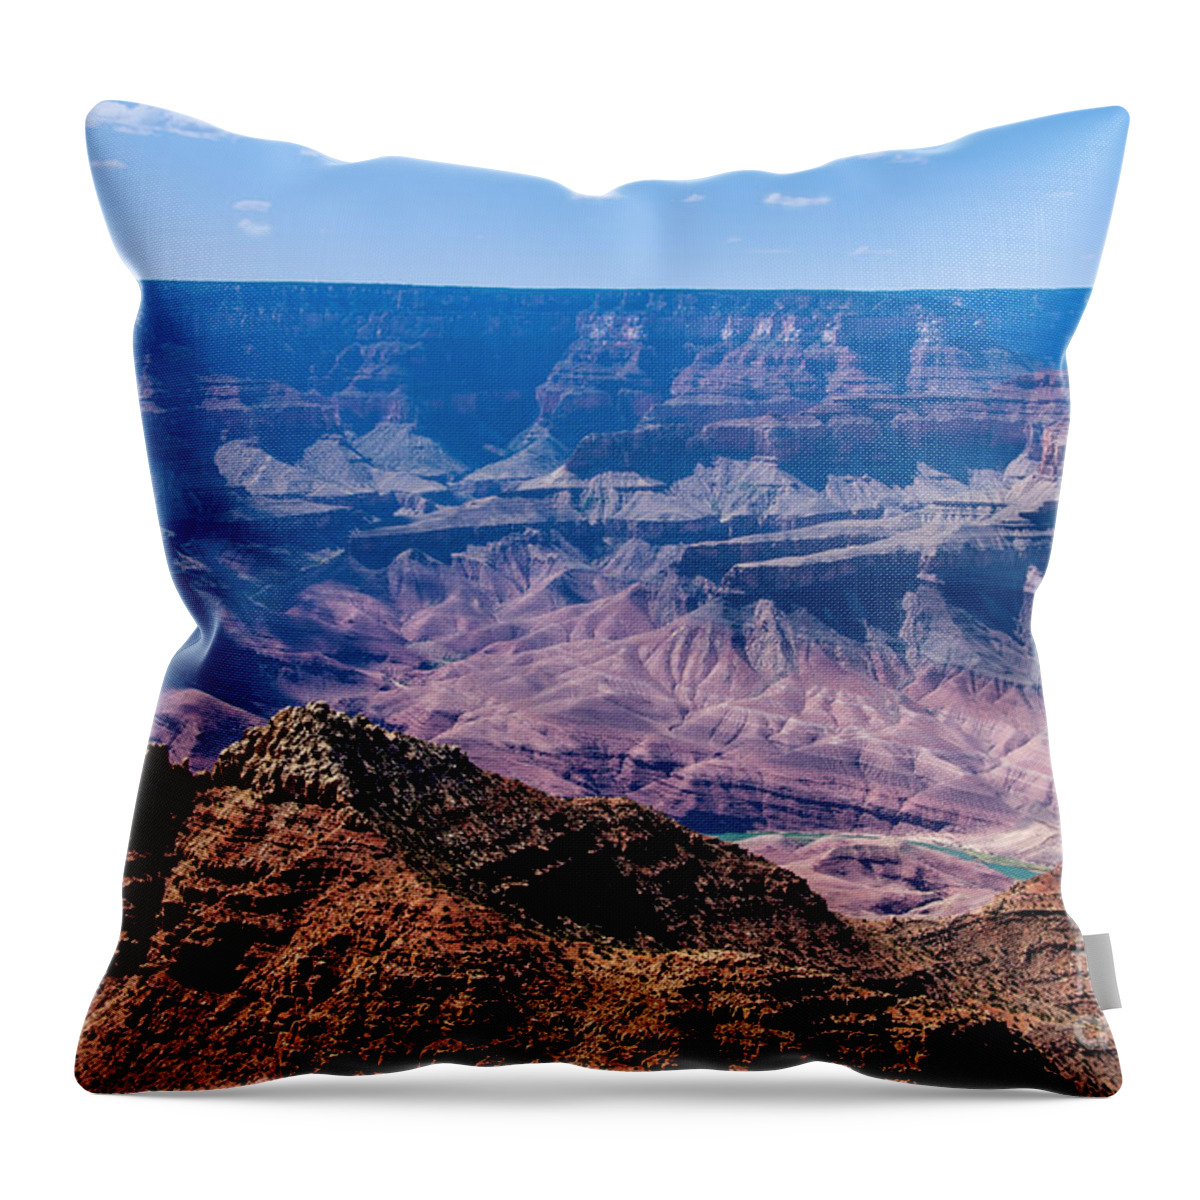 The Grand Canyon Arizona Throw Pillow featuring the digital art The Grand Canyon Arizona by Tammy Keyes